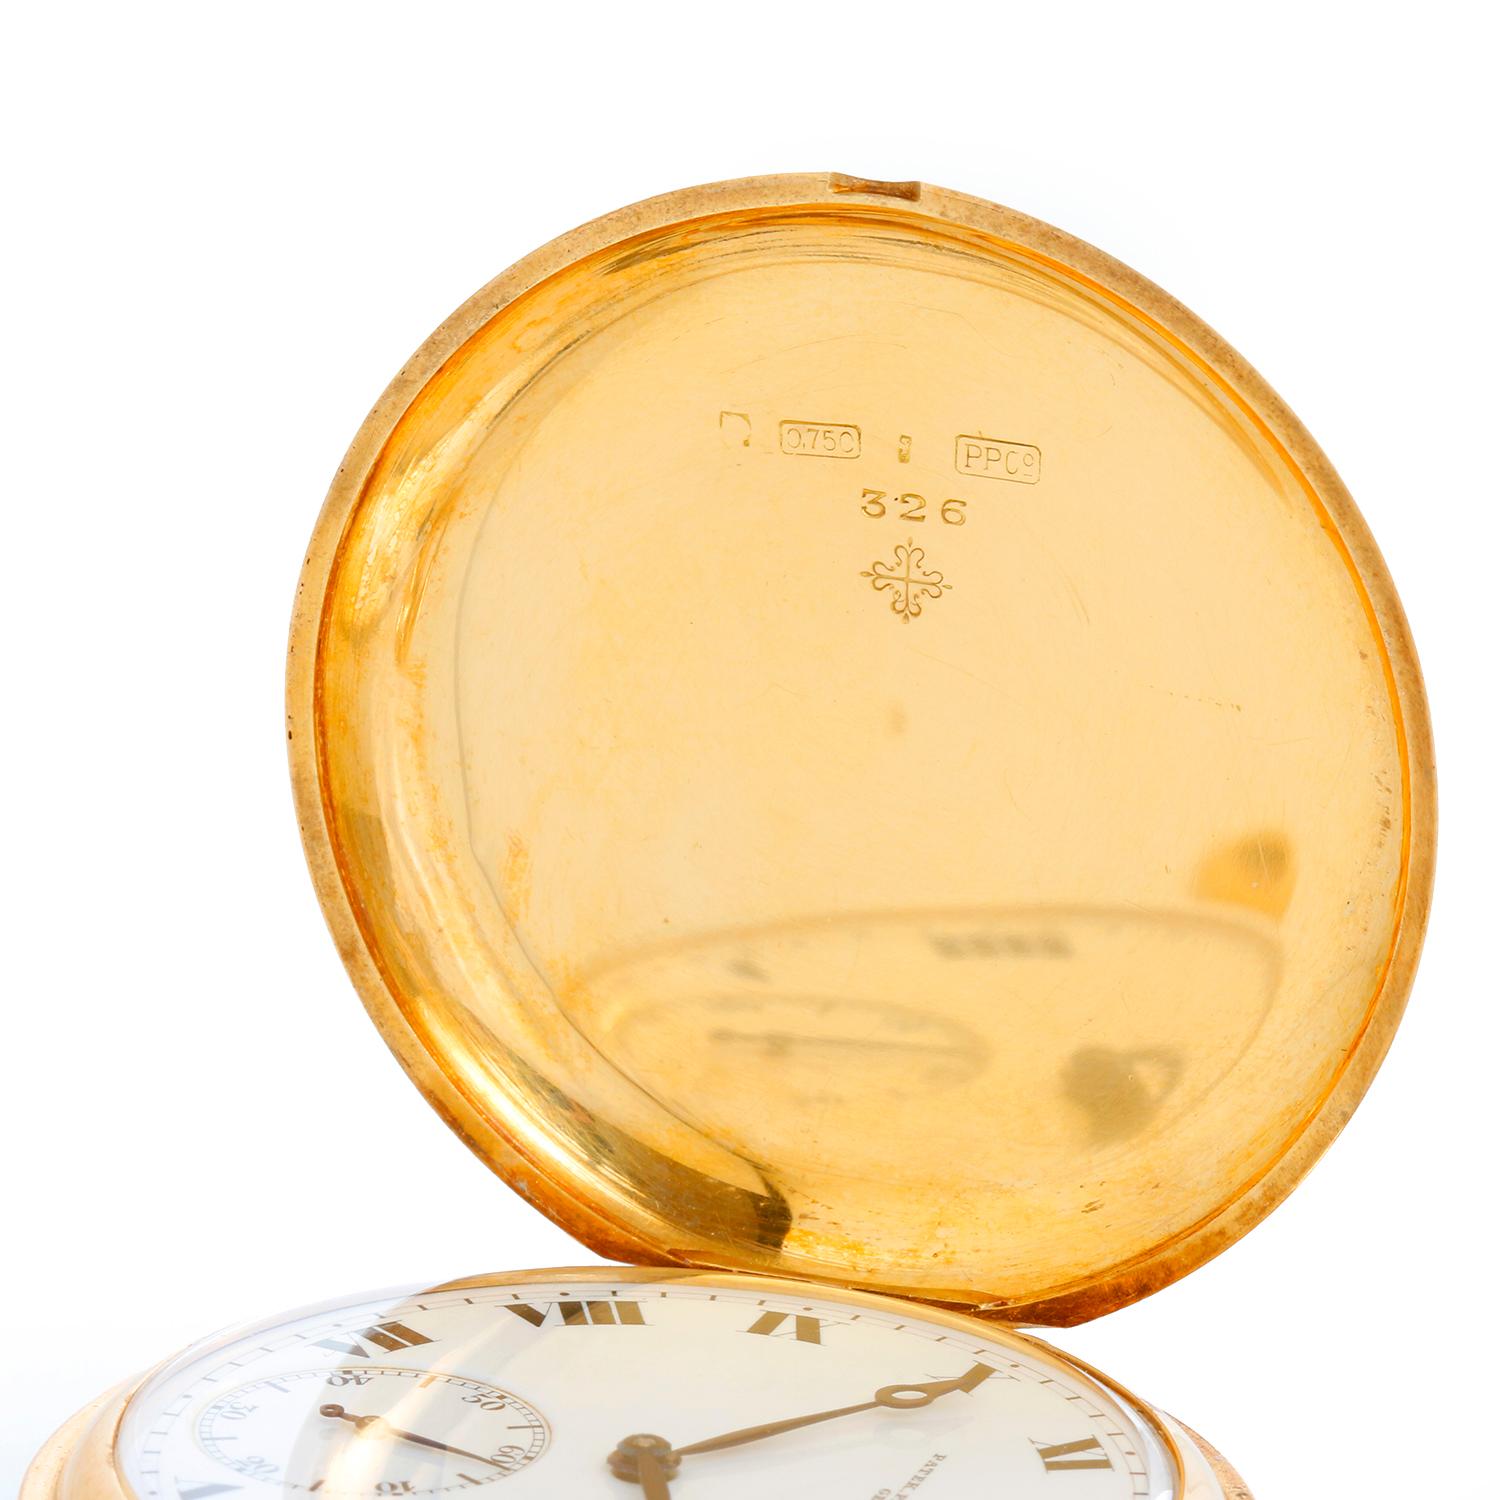 Patek Philippe 18K Hunting Case Roman Numerals Pocket Watch - Remontage manuel. Boîtier en or jaune 18 carats (45 mm). Cadran blanc avec chiffres romains noirs ; secondes à 6 heures ; aiguilles bleues. Le boîtier et le cadran sont signés. D'occasion